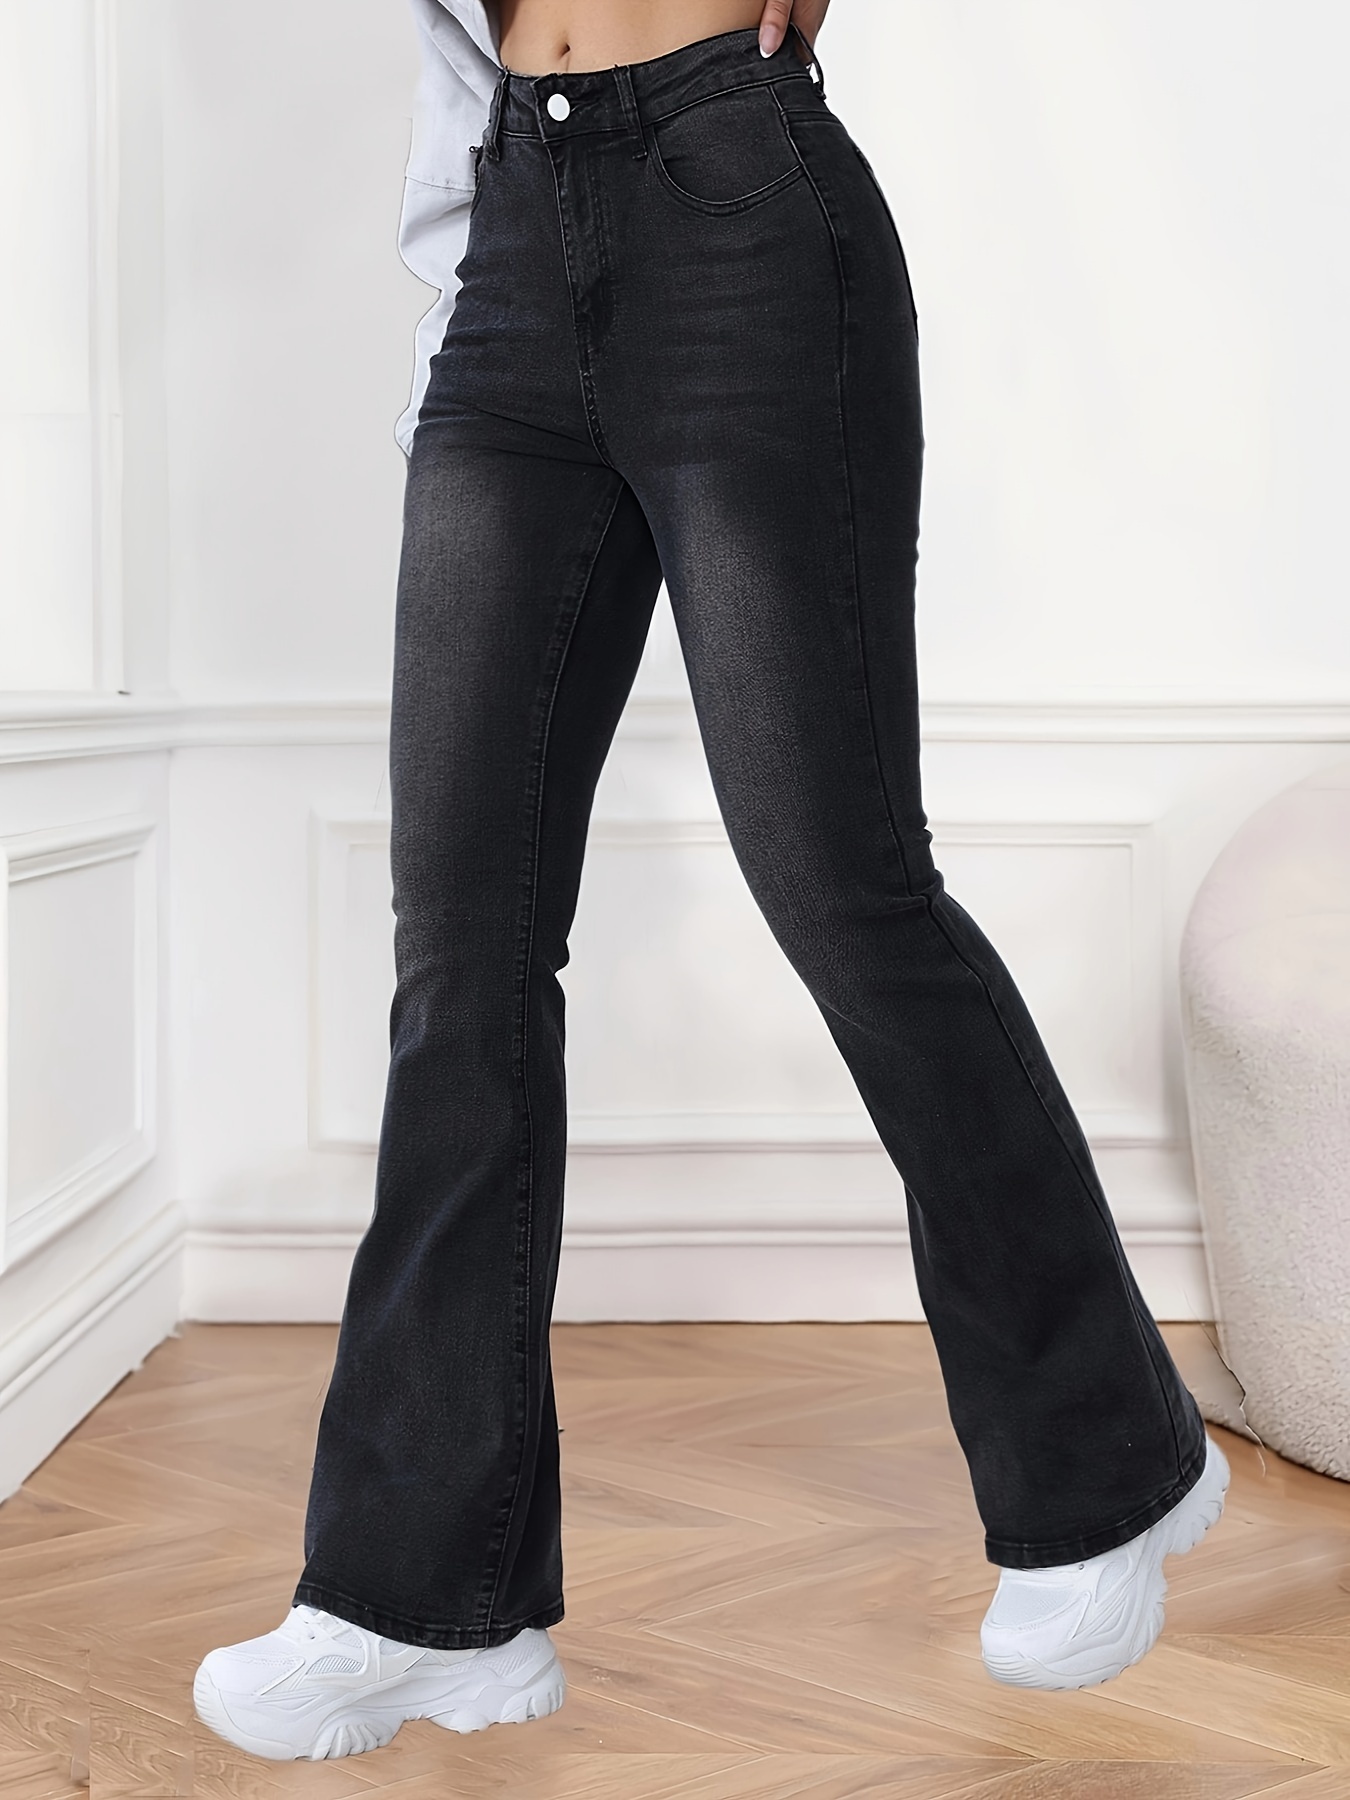 Jeans Acampanados Negros Con Agujeros Rasgados, Jeans Acampanados  Desgastados De Alta Elasticidad, Jeans Y Ropa De Mezclilla Para Mujer